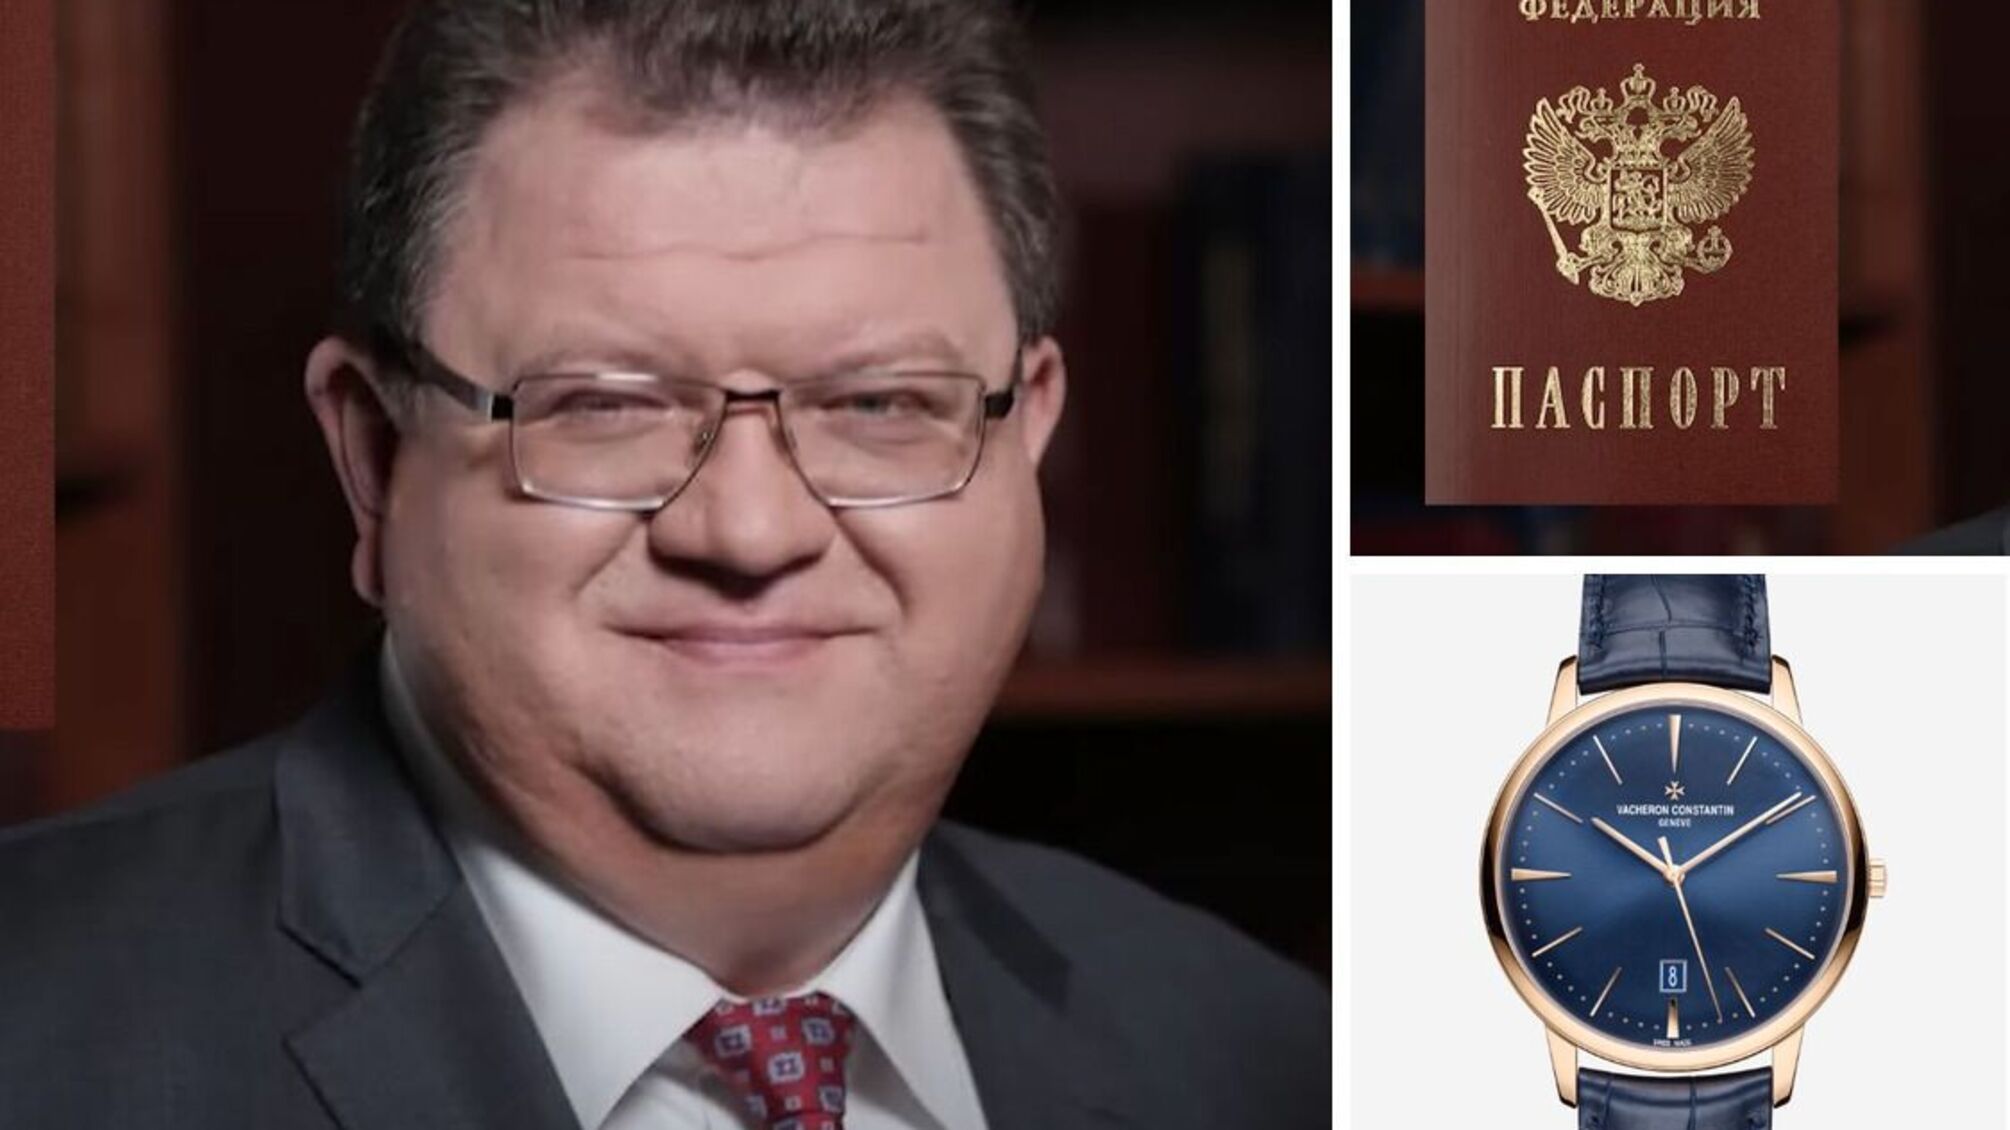 Неблагочестие и любовь к роскоши: чем известен судья Львов, которого журналисты обвиняют в гражданстве рф